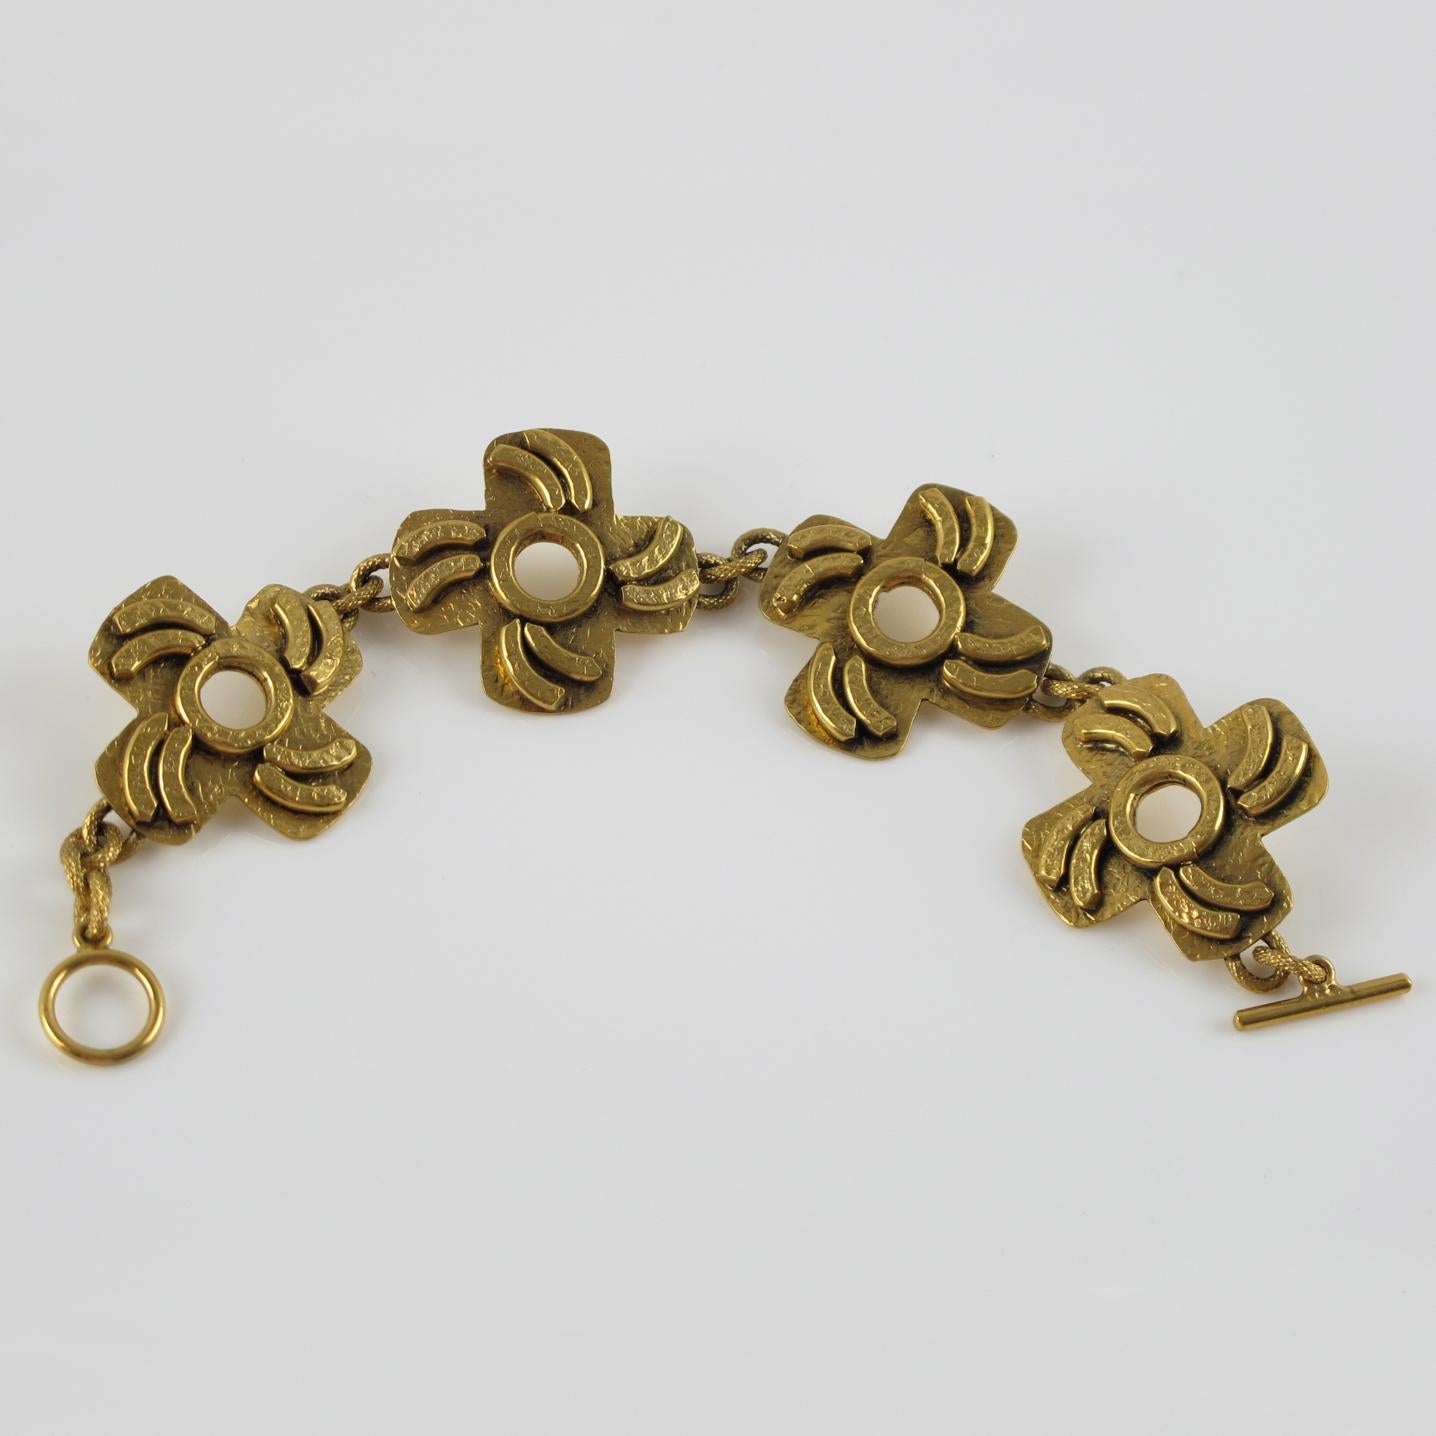 Superbe bracelet à maillons du créateur de bijoux français Henry Perichon (alias Henry). Bronze doré dans un design moderniste des années 1960 orné de sculptures géométriques. Signé 